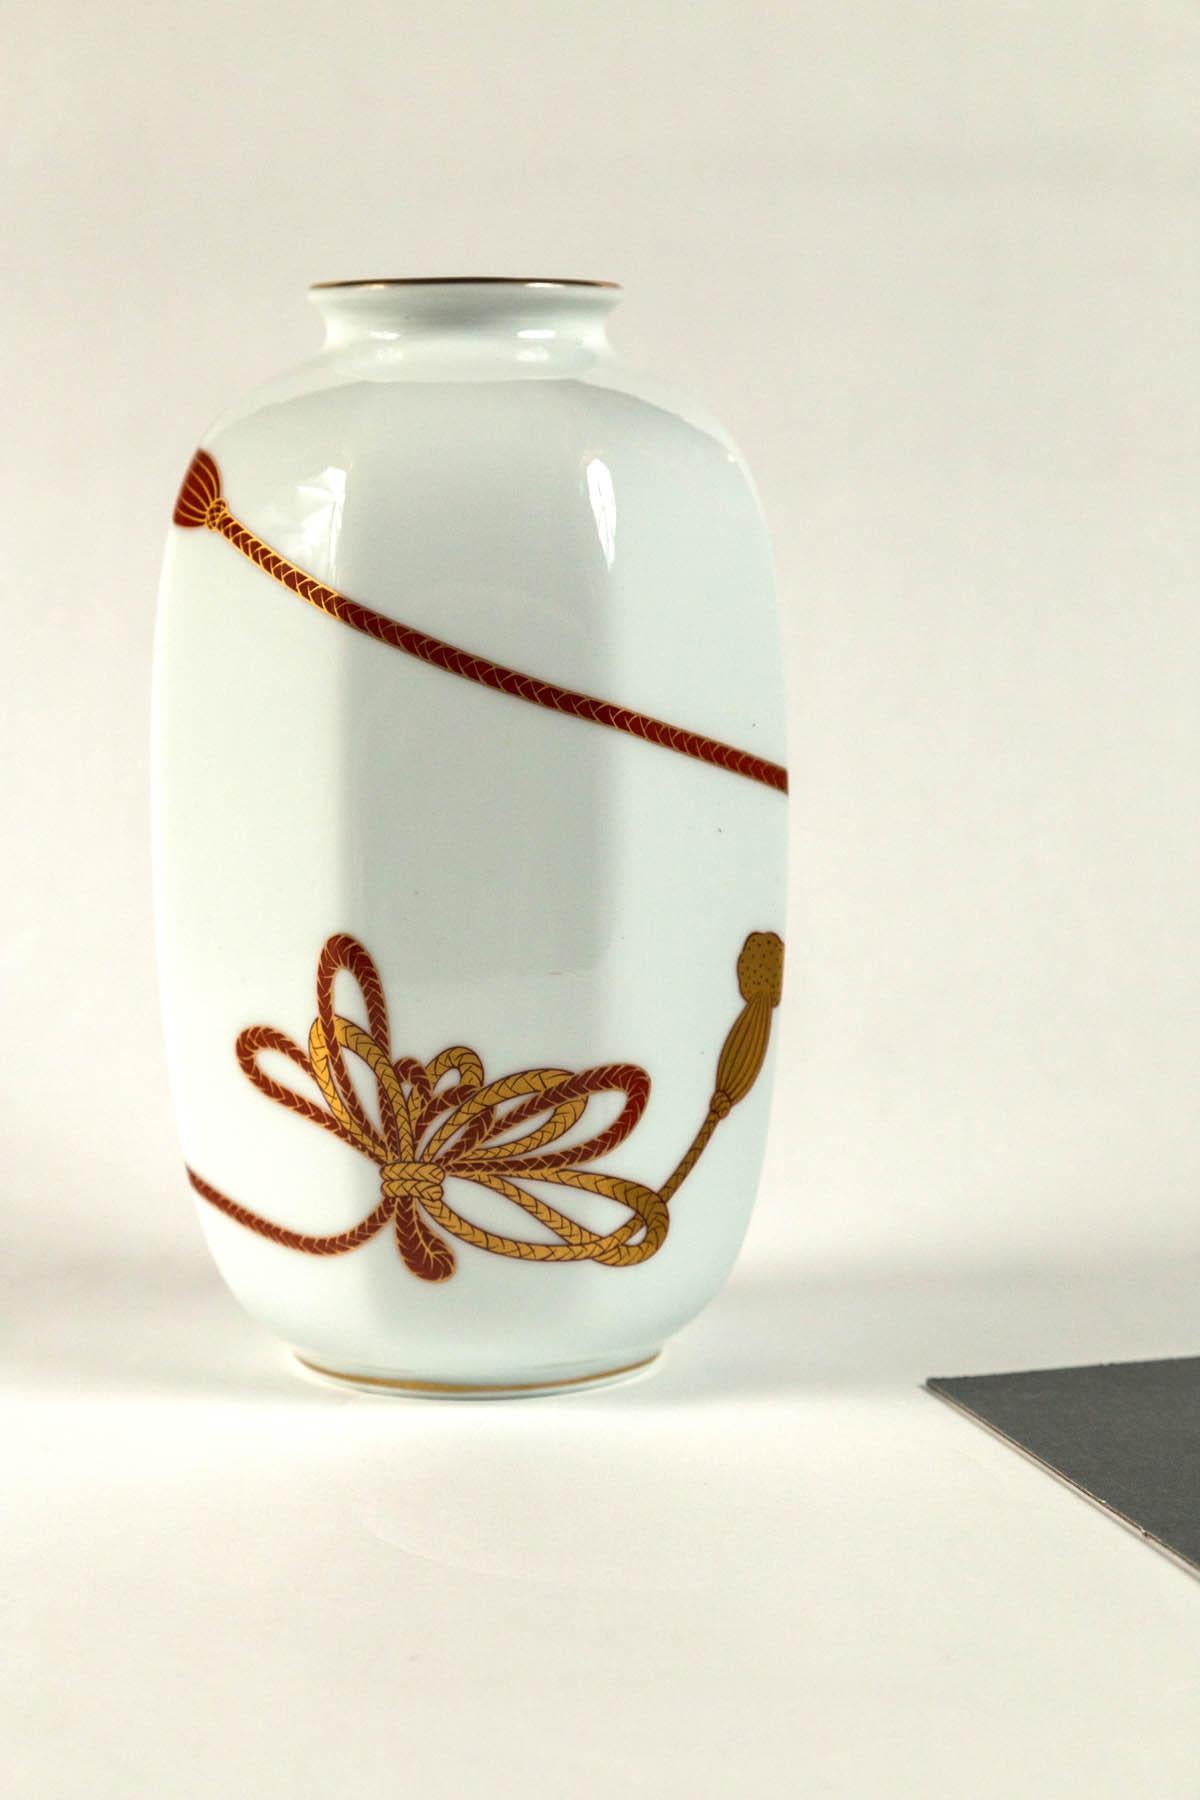 Aritaware-Porzellanvase, Fukagawa, Japan, 20. Jahrhundert. Achteckige Vase. Grafisches Quastendesign in Gold und Dunkelrot auf weißem Grund.